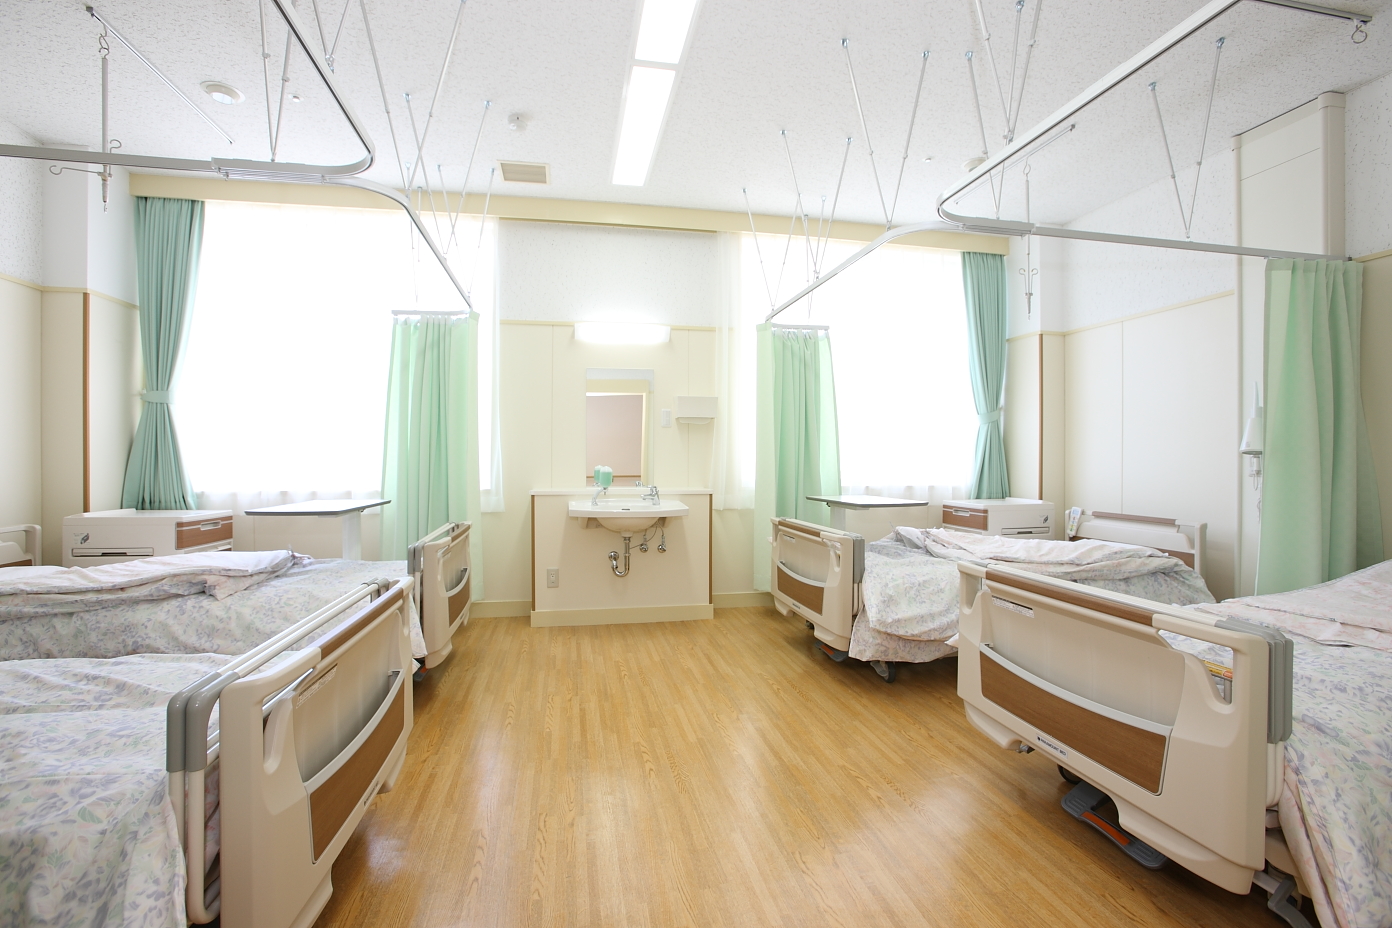 大きな窓からたくさんの光が入る4台のベッドが並んだきれいな病室の写真